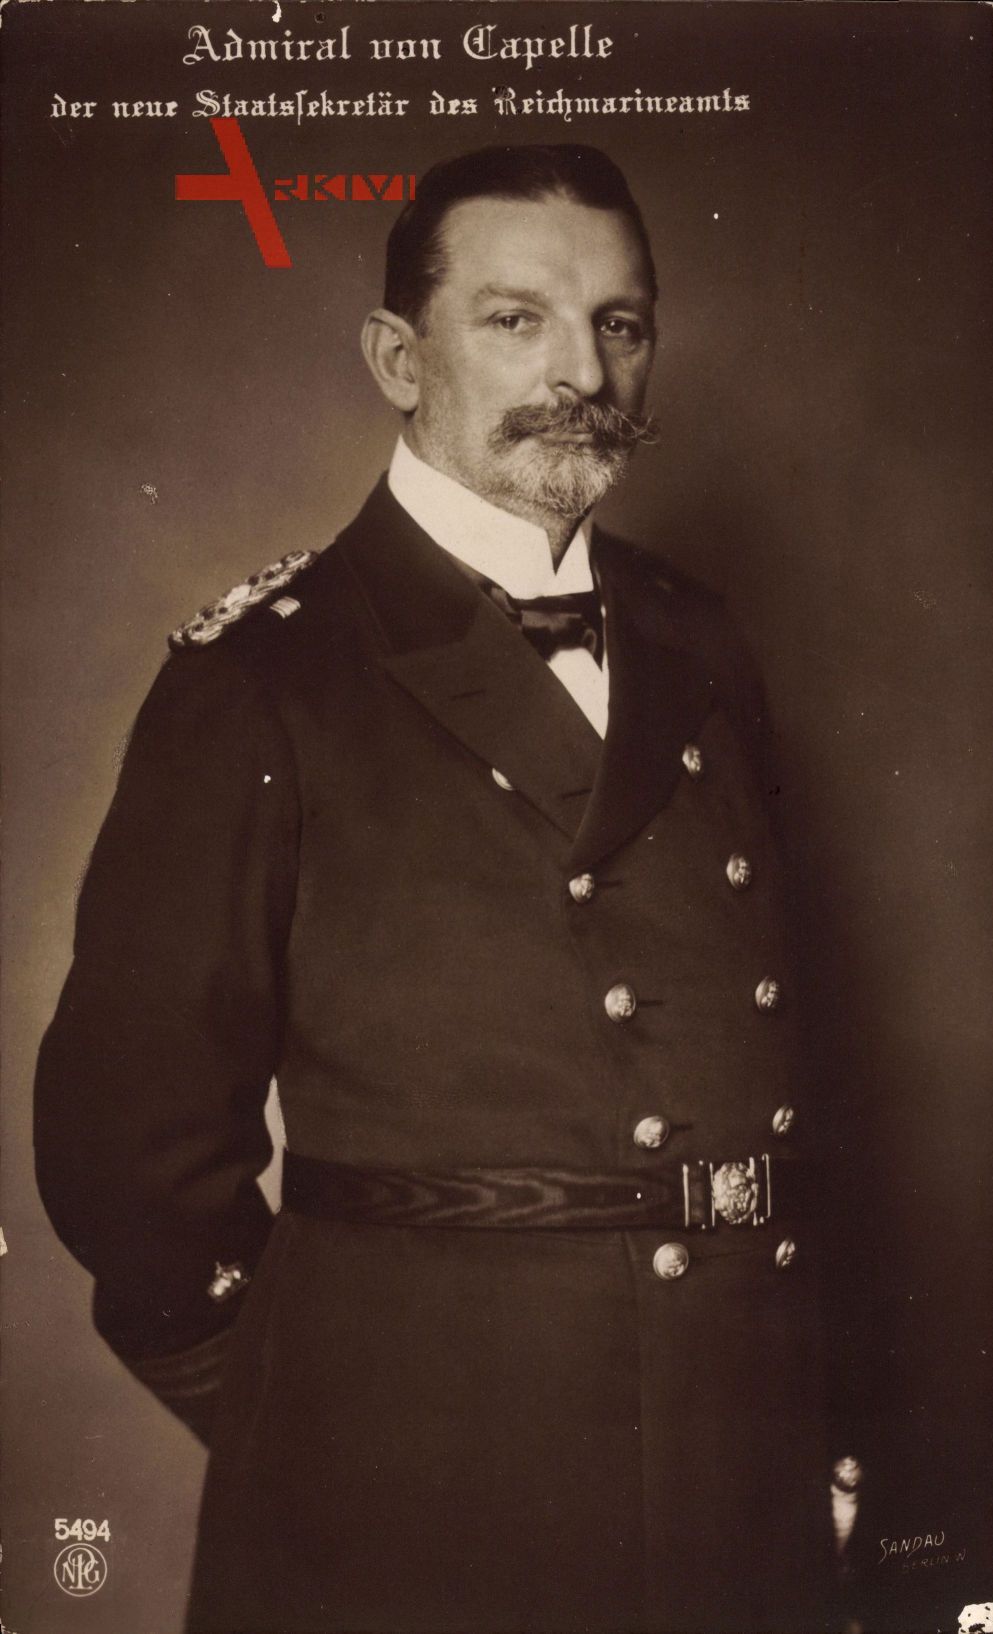 Admiral von Capelle, Staatssekretär des Reichsmarineamts, Uniform